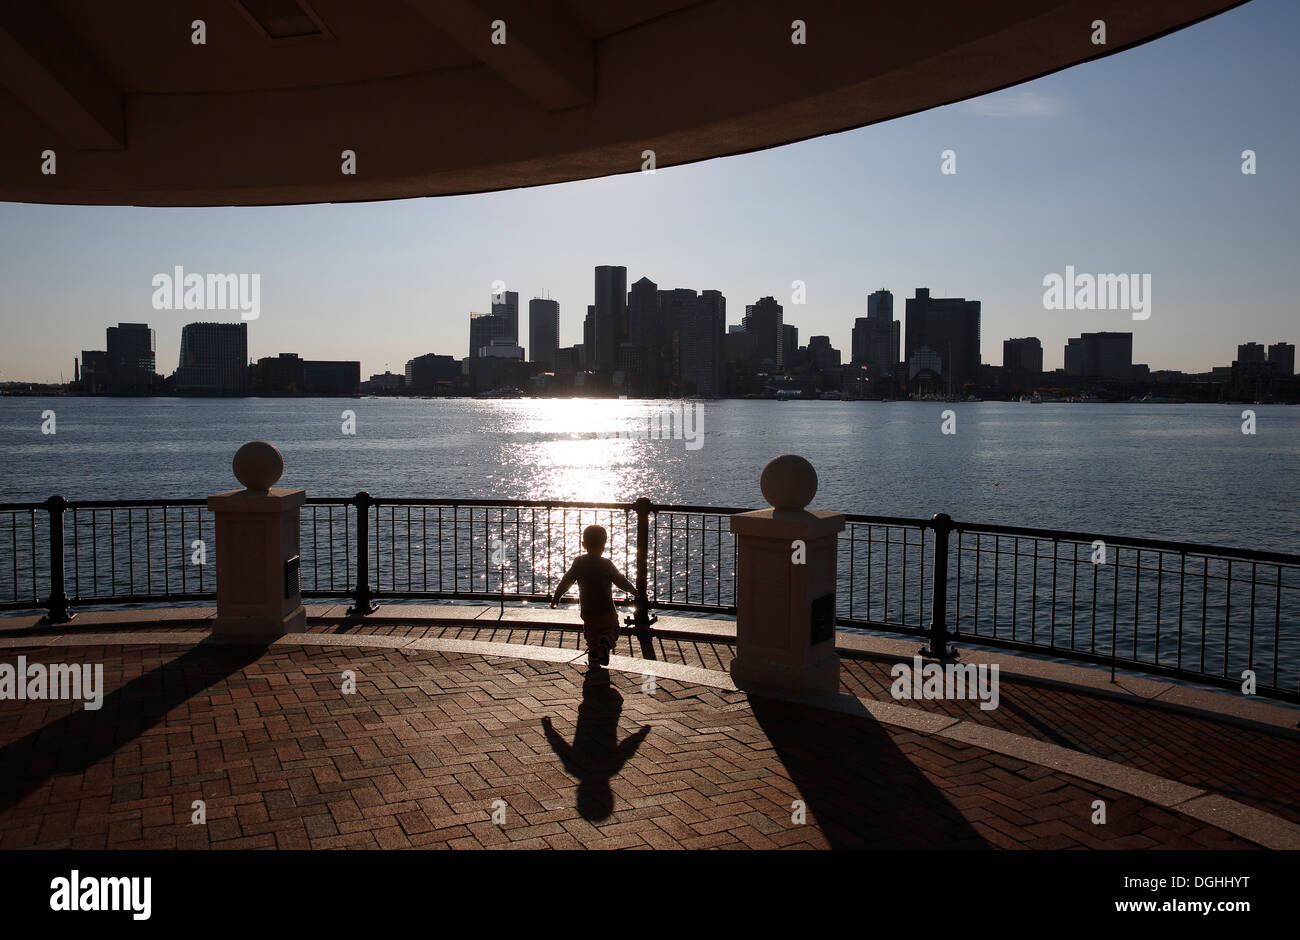 Piers Park on Boston Harbor and city skyline, Boston, Massachusetts, USA Stock Photo